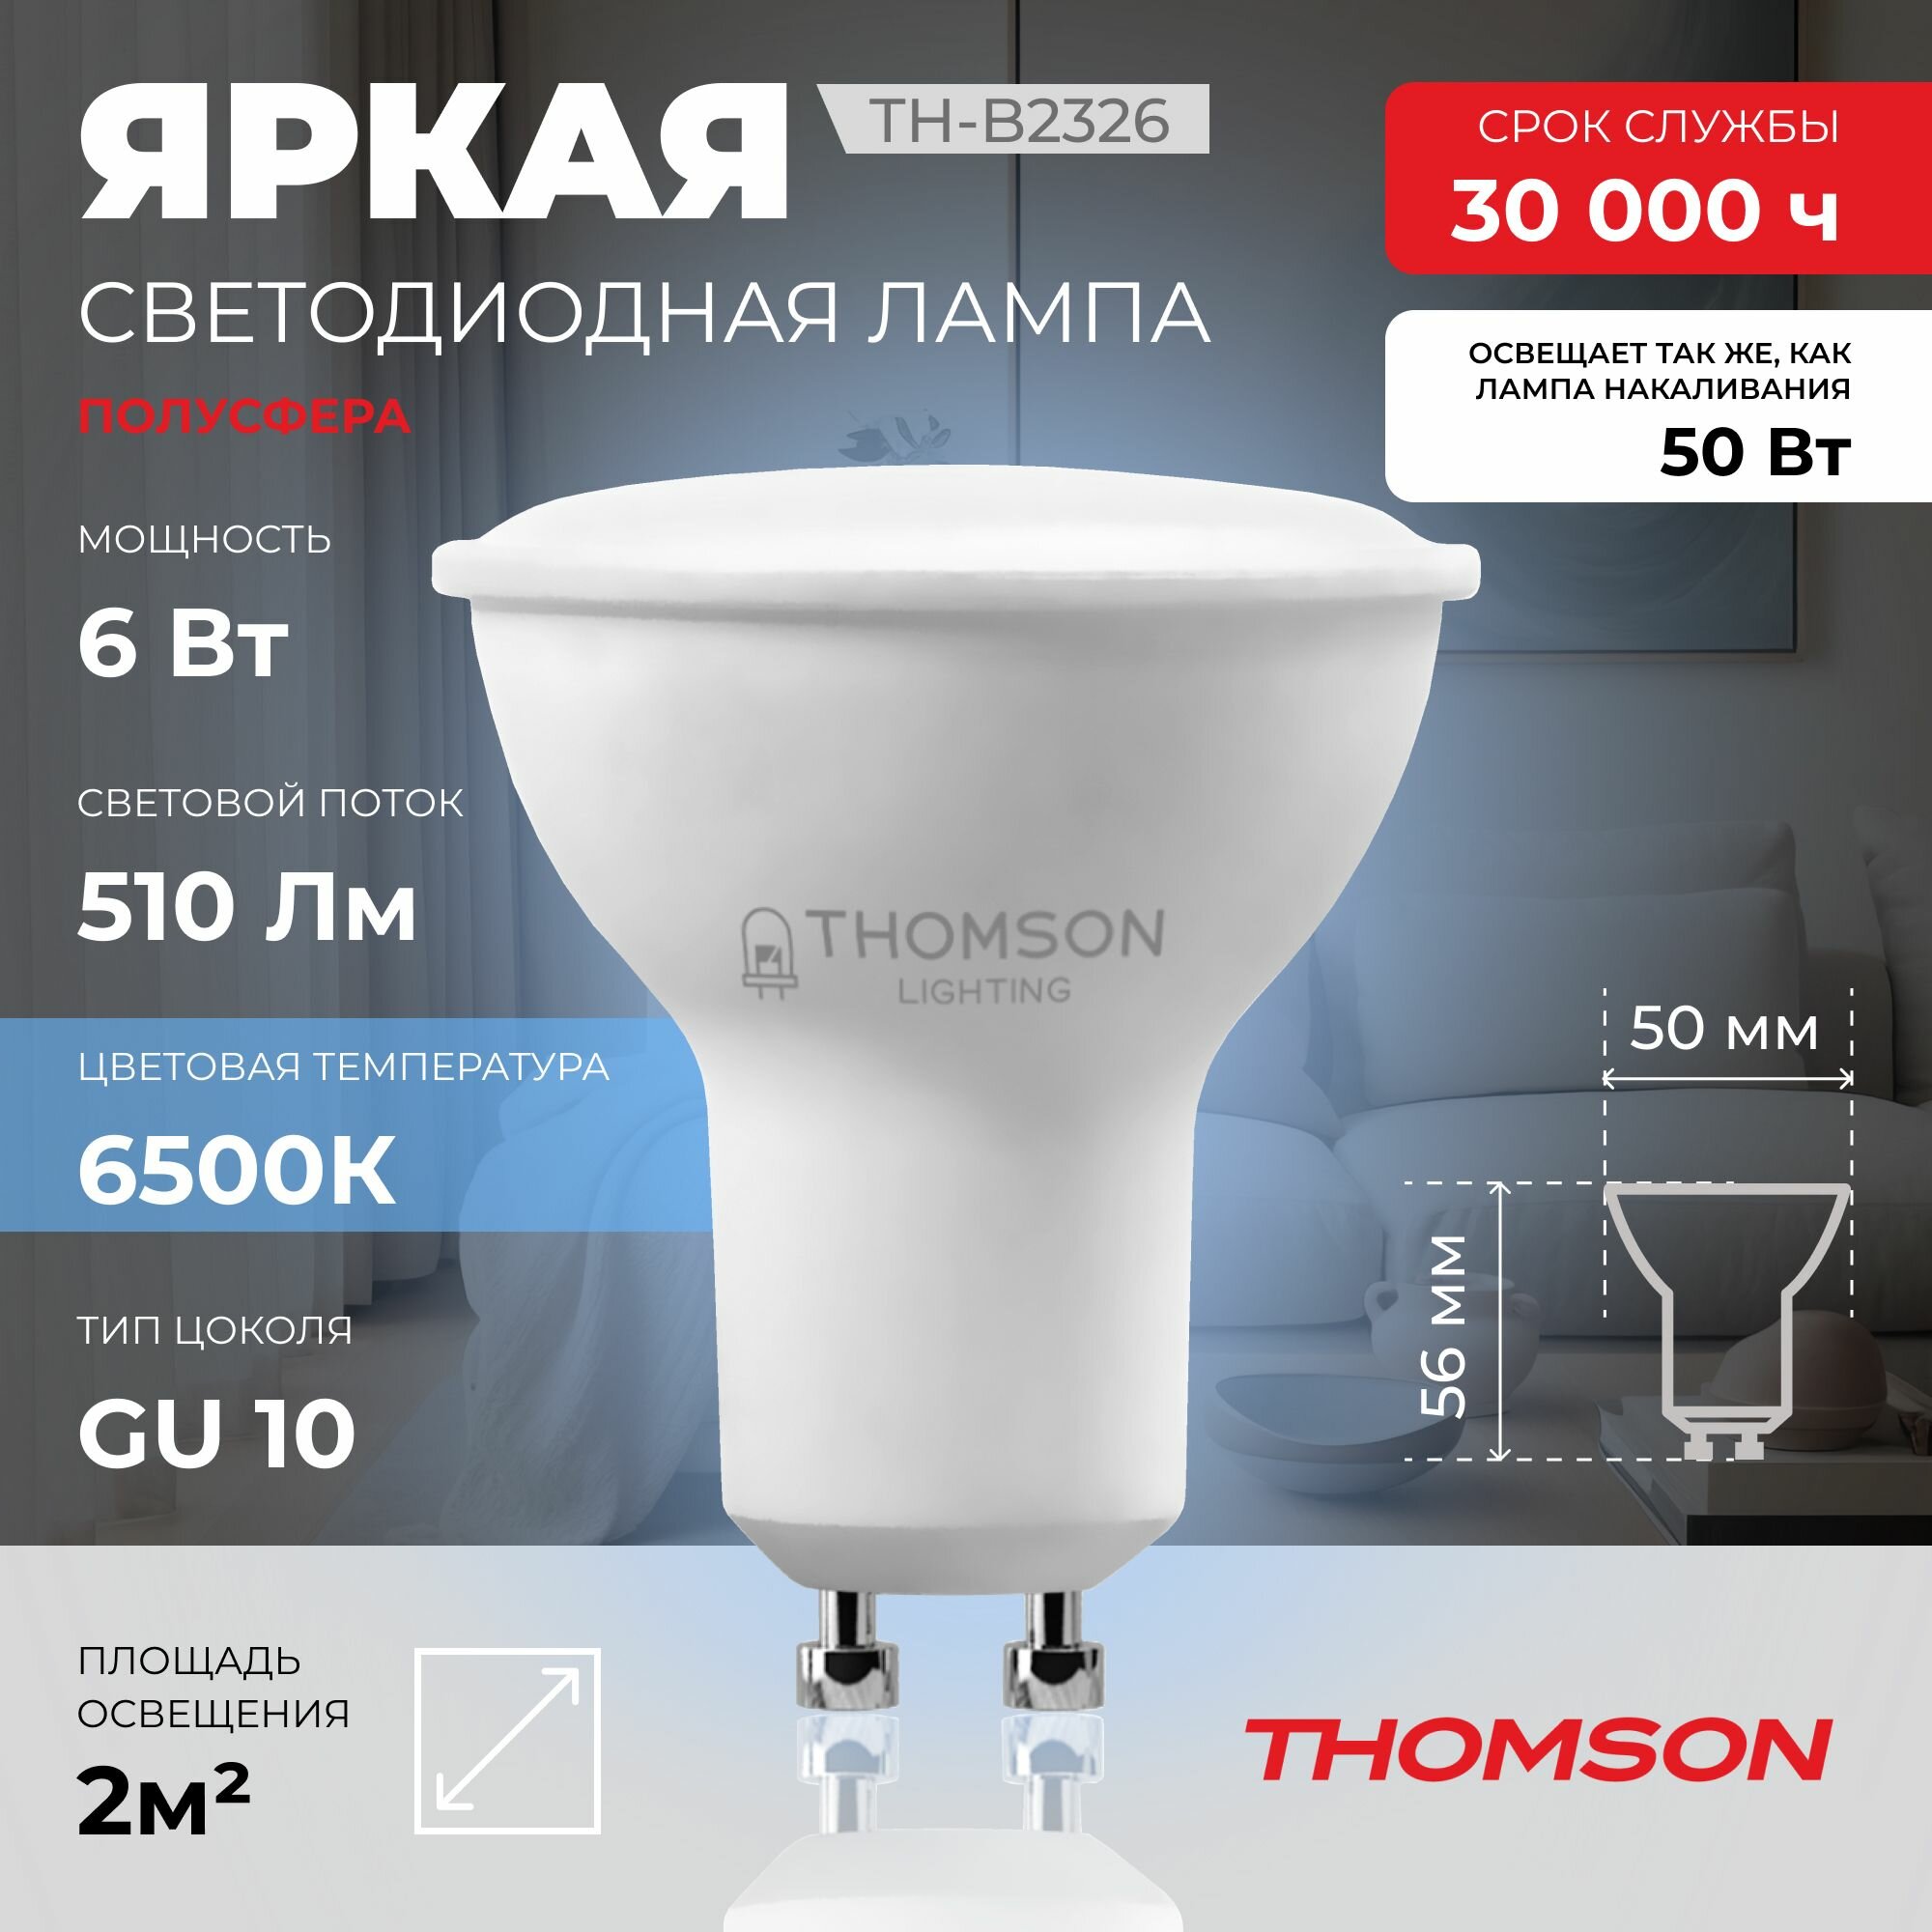 Лампочка Thomson TH-B2326 6 Вт, GU10, полусфера 6500K, MR16, холодный белый свет